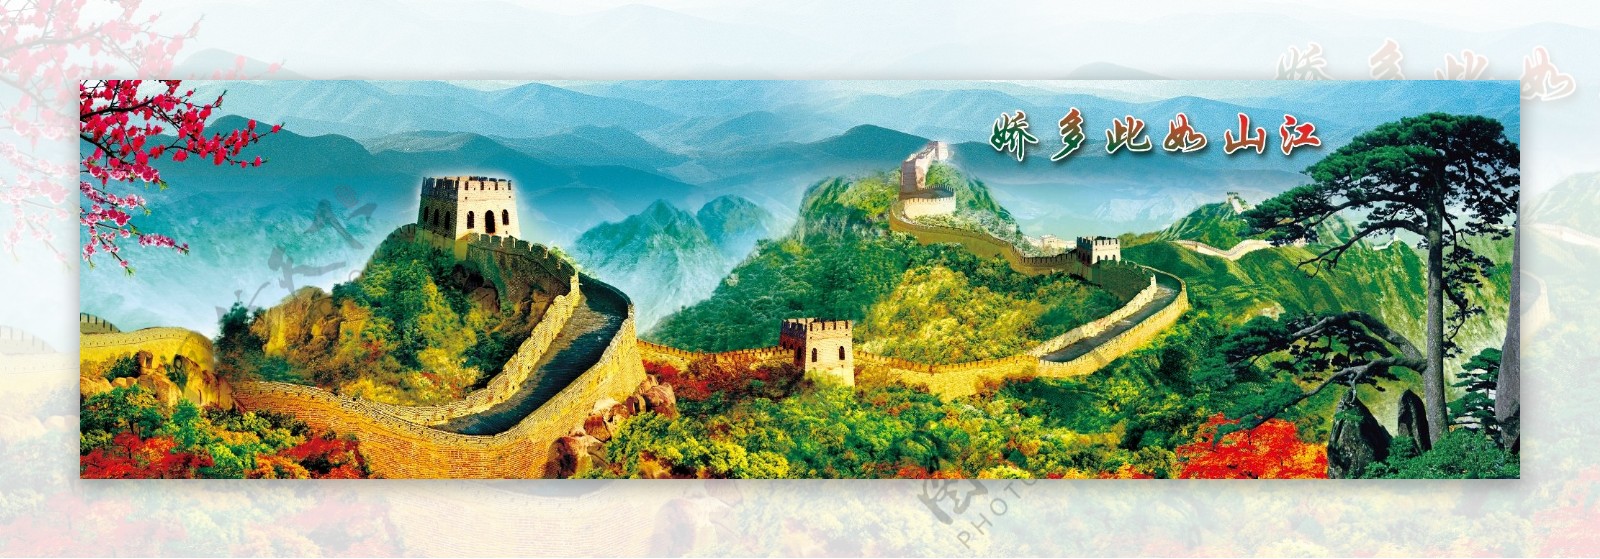 长城图江山如画文化墙